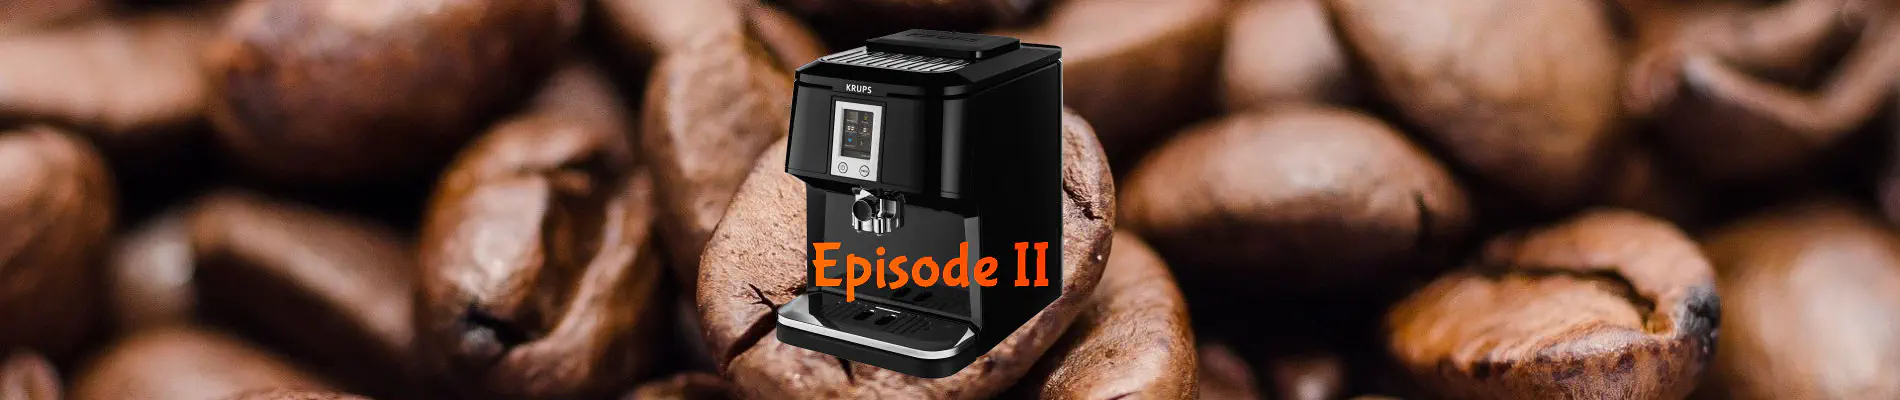 Réparation de la machine à café Krups EA8800 - Episode II